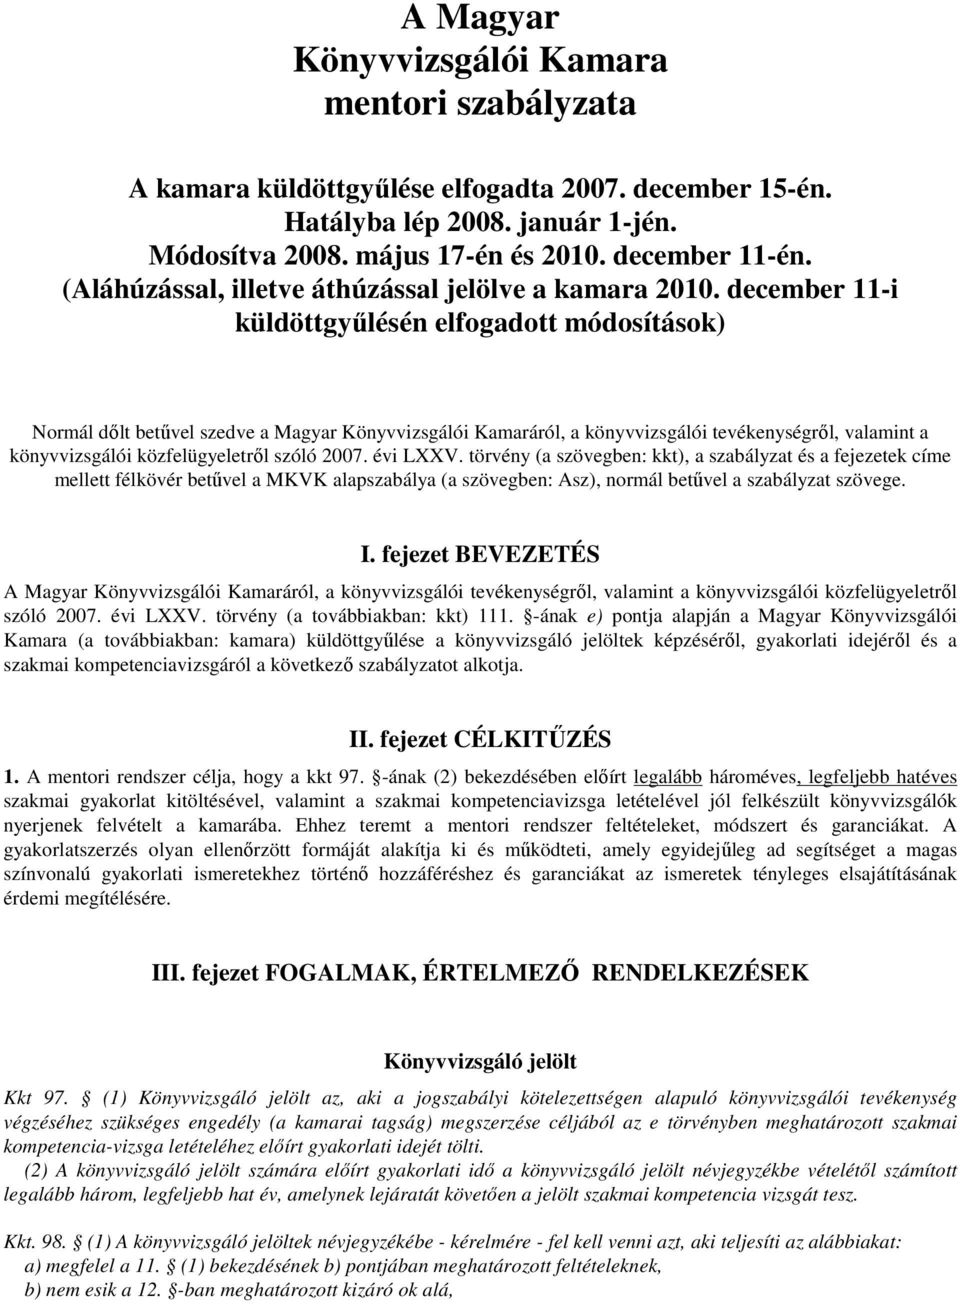 december 11-i küldöttgyűlésén elfogadott módosítások) Normál dőlt betűvel szedve a Magyar Könyvvizsgálói Kamaráról, a könyvvizsgálói tevékenységről, valamint a könyvvizsgálói közfelügyeletről szóló